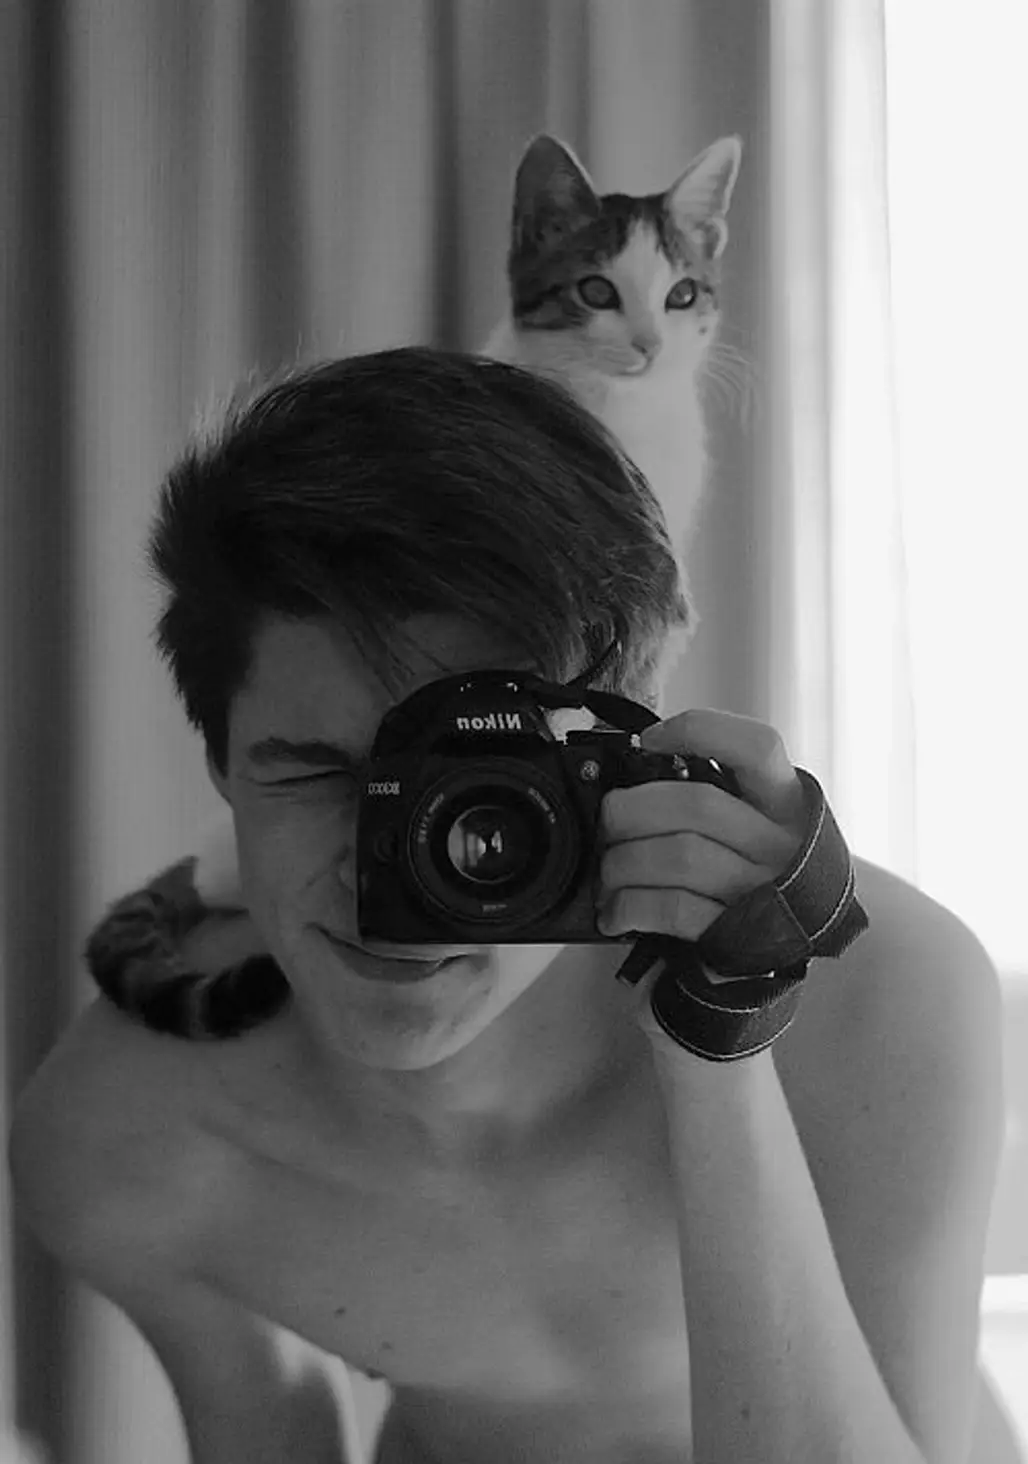 Best Kind of Cat Selfie